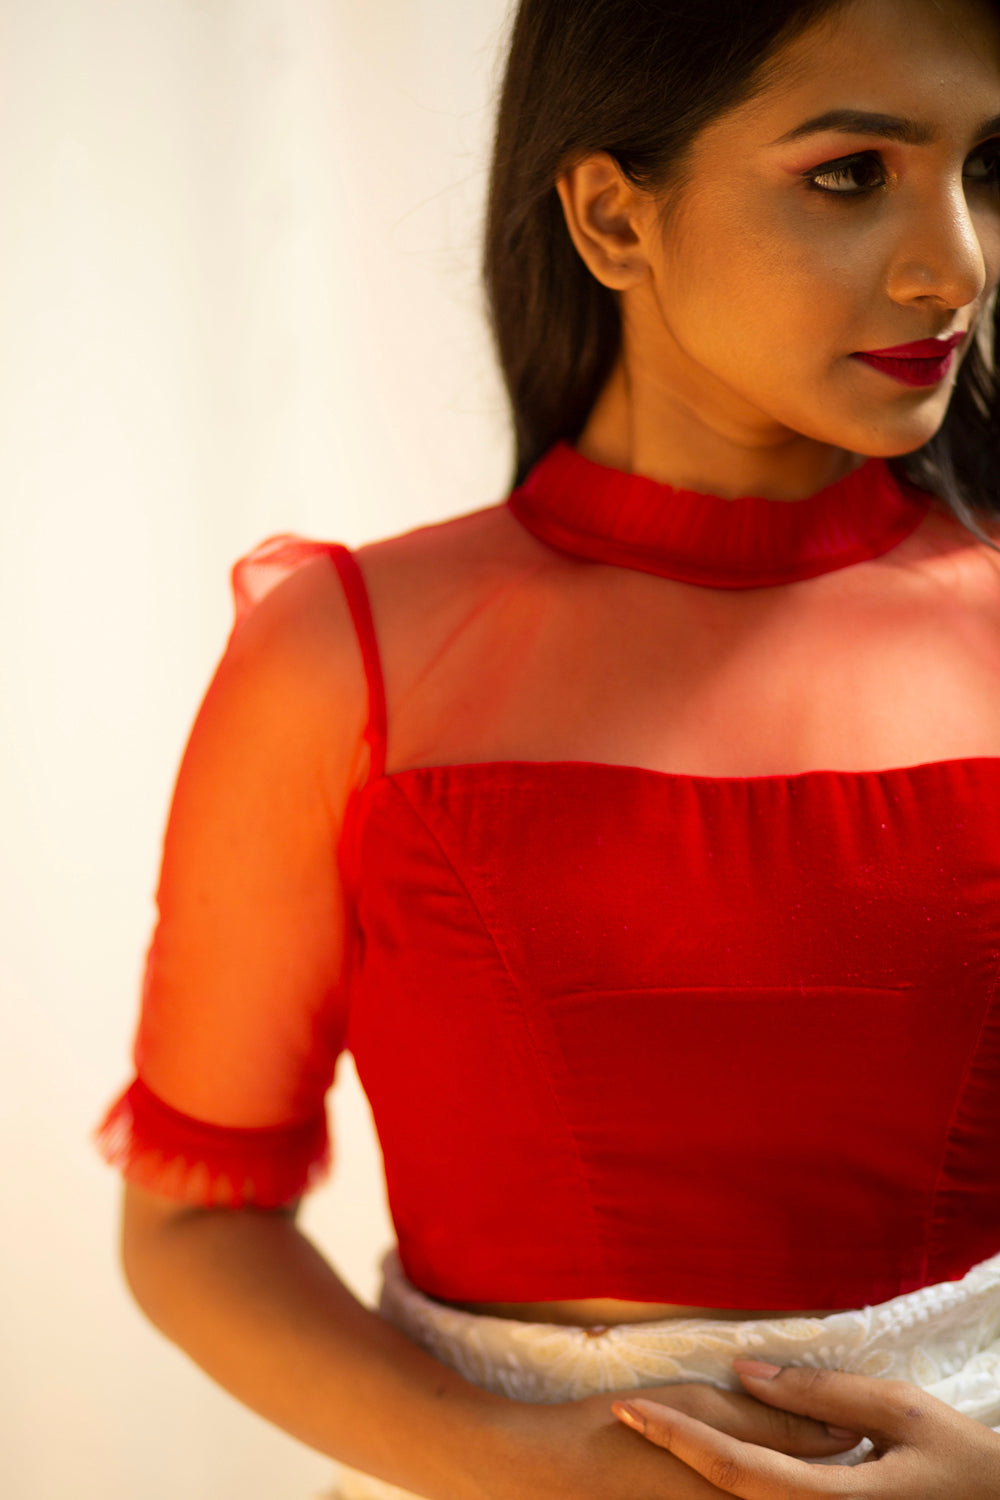 Red velvet and net sheer yoke blouse with frill detailing